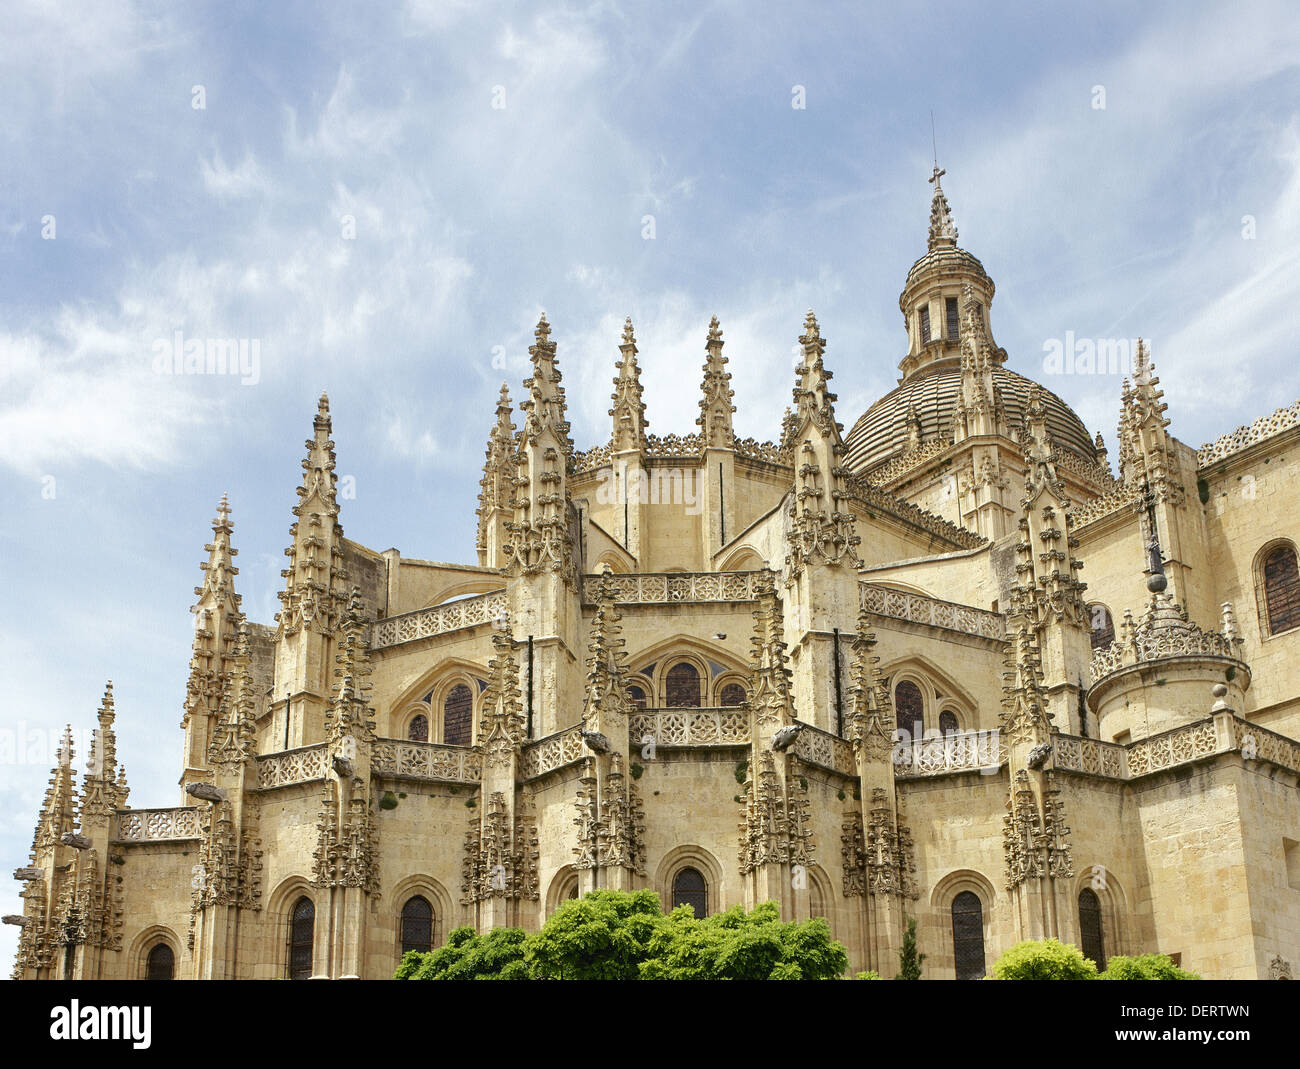 Spagna. Segovia. Cattedrale. In stile tardo gotico. Da Juan e Rodrigo Gil de Hontanon. Esterno. Dettaglio. Foto Stock